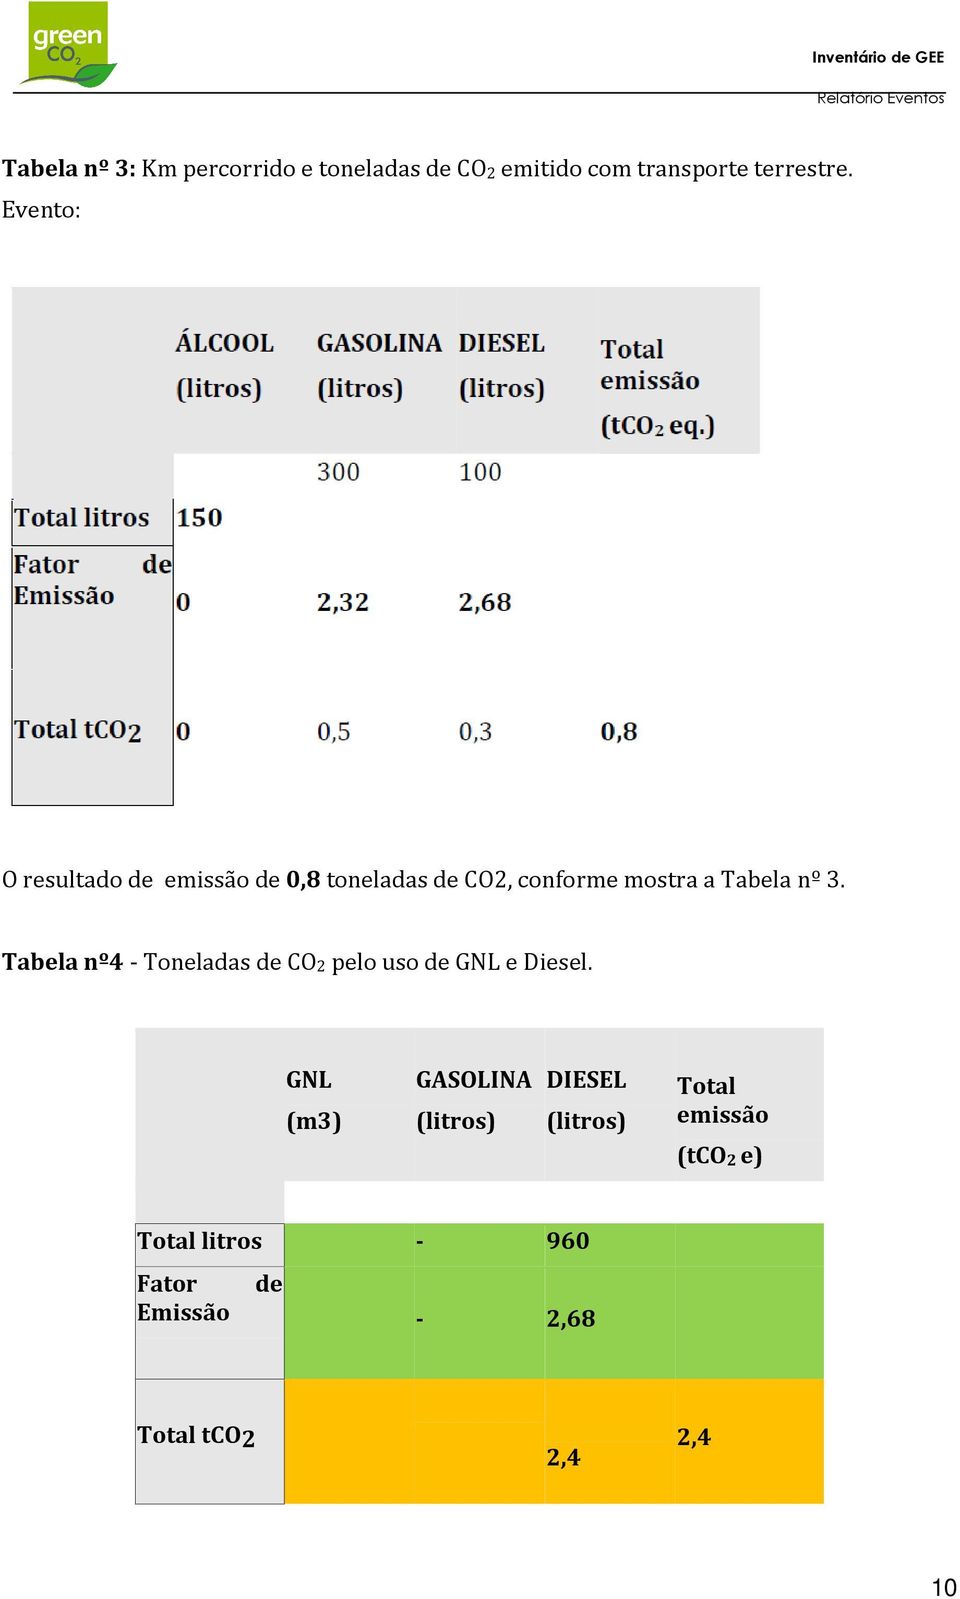 Tabela nº4 - Toneladas de CO2 pelo uso de GNL e Diesel.